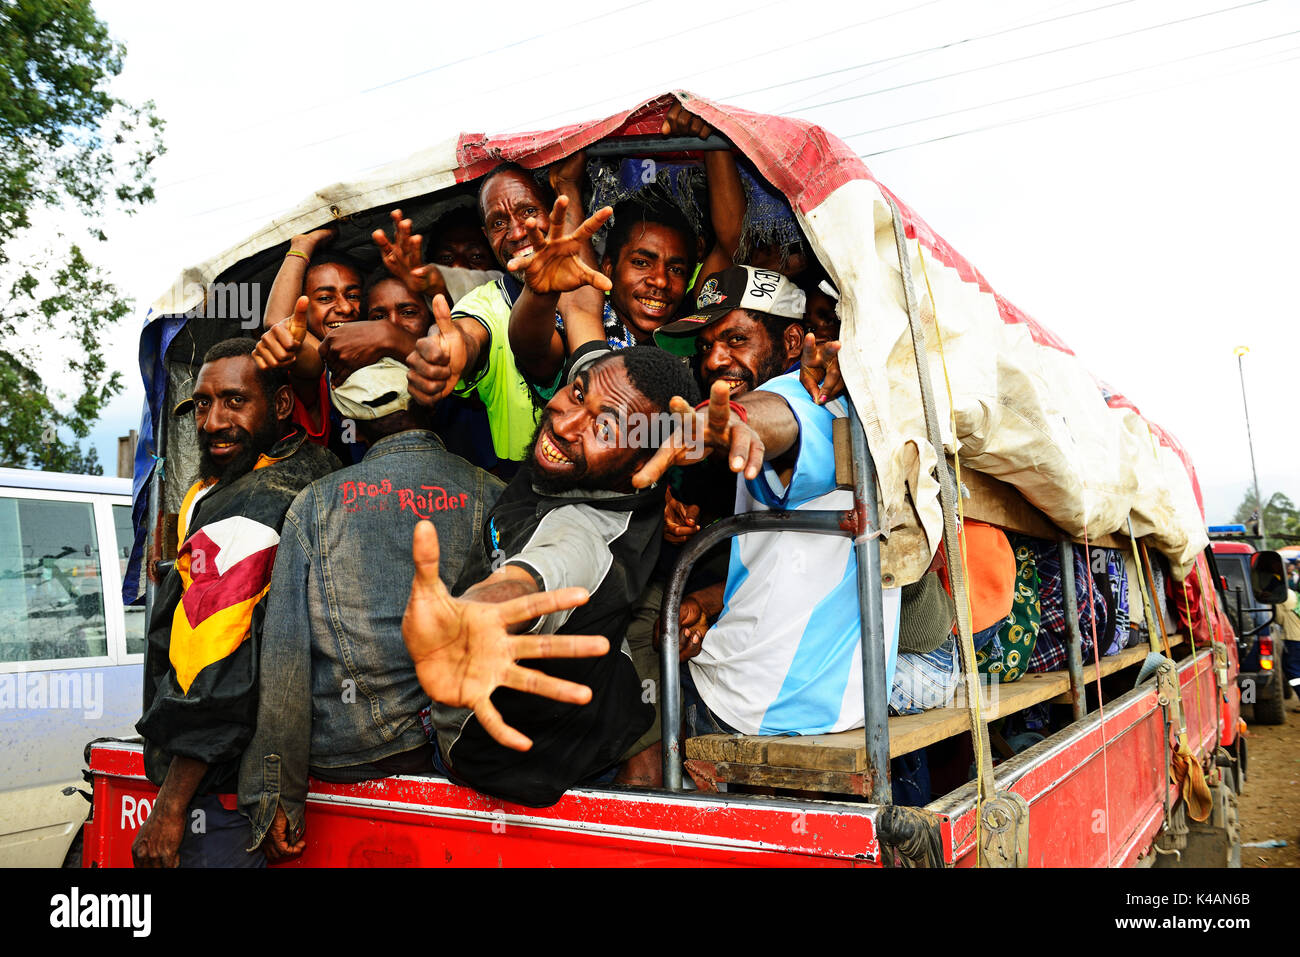 Public Bus, Goroka, Papua New Guinea Stock Photo